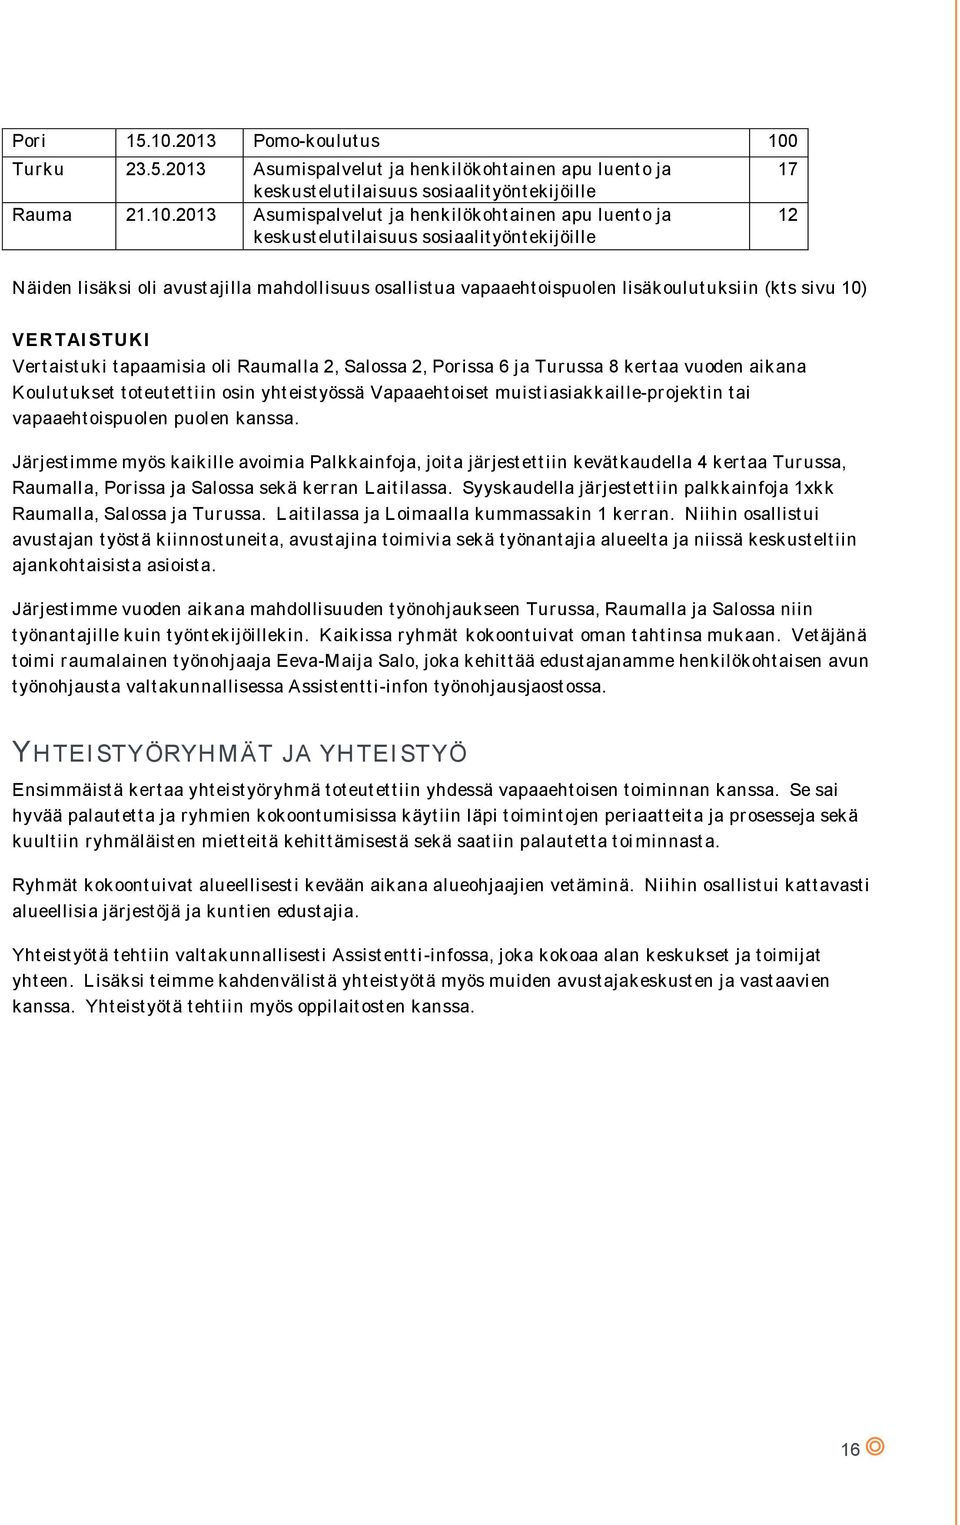 Turku 23.5.2013 Asumispalvelut ja henkilökohtainen apu luento ja keskustelutilaisuus sosiaalityöntekijöille Rauma 21.10.